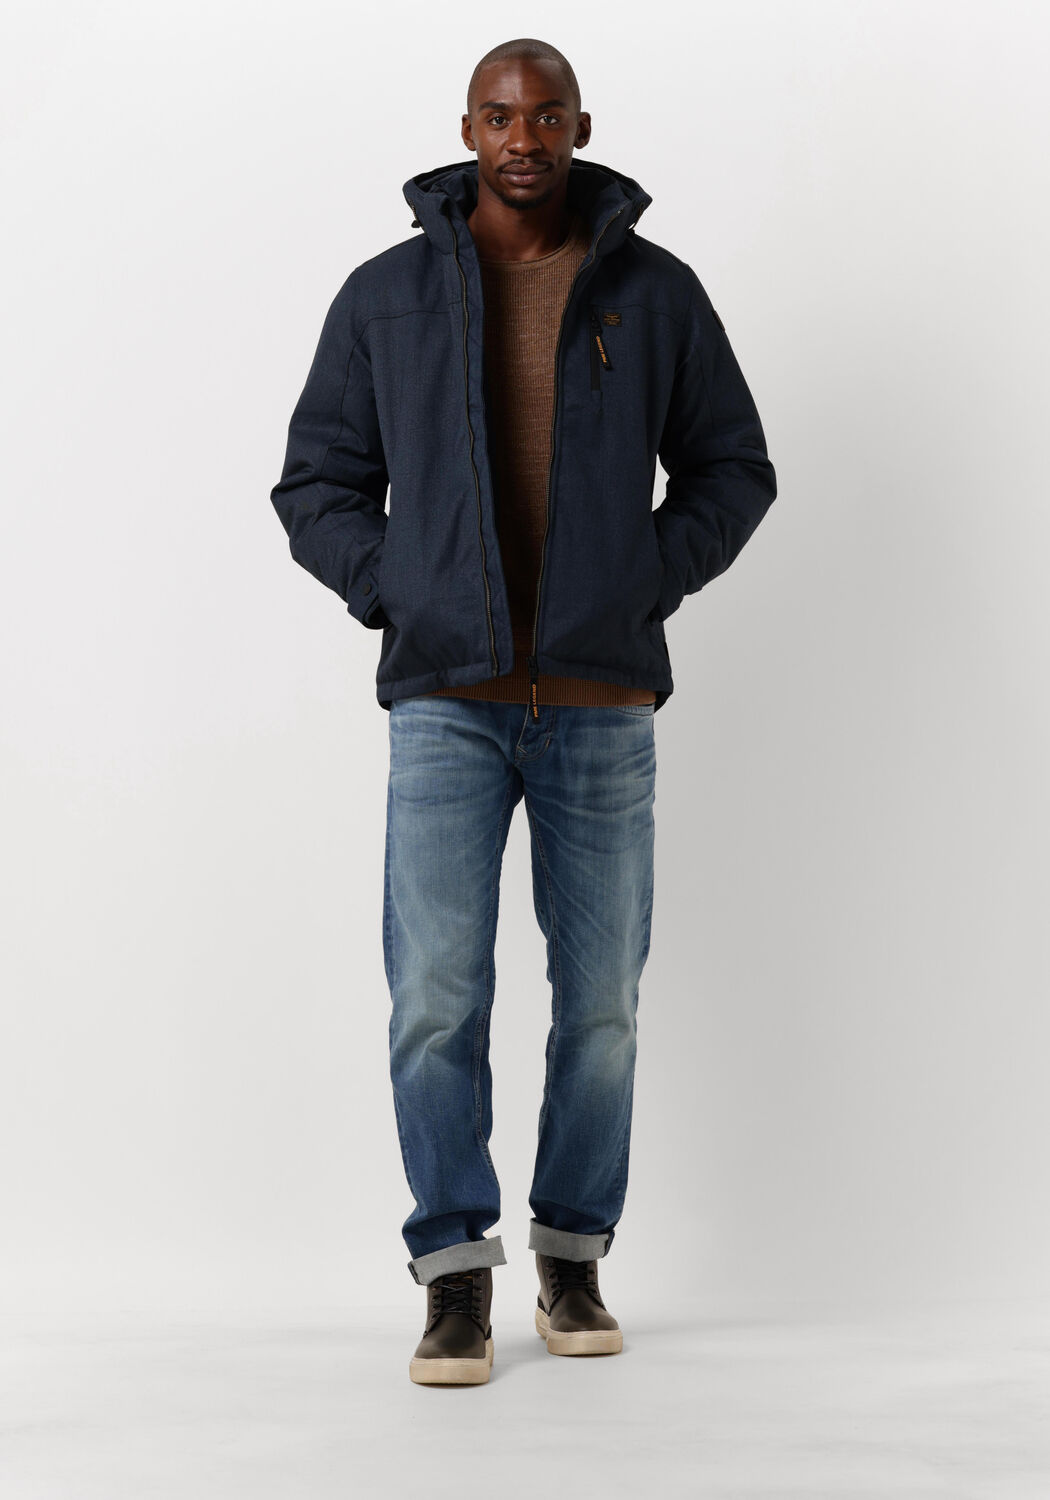 Herren Bekleidung Jacken Lederjacken PME LEGEND Long Sleeve R-neck Cotton Rib Nicht-gerade in Natur für Herren 